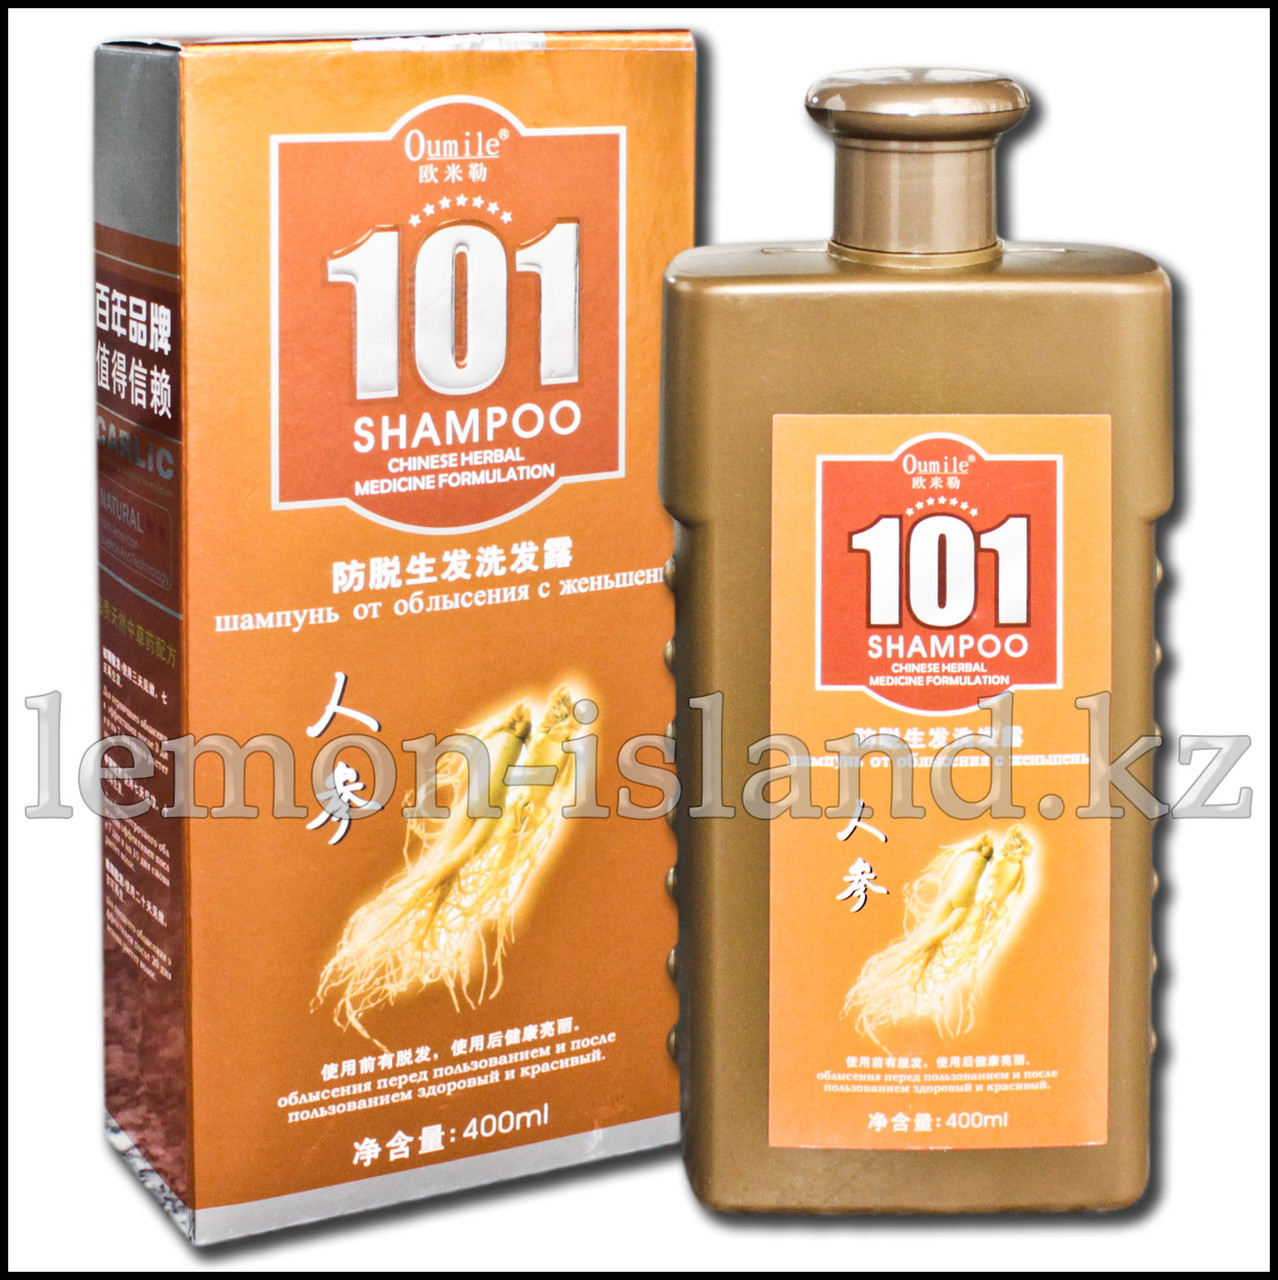 Шампунь "101" от Oumile против выпадения волос с экстрактом женьшеня.